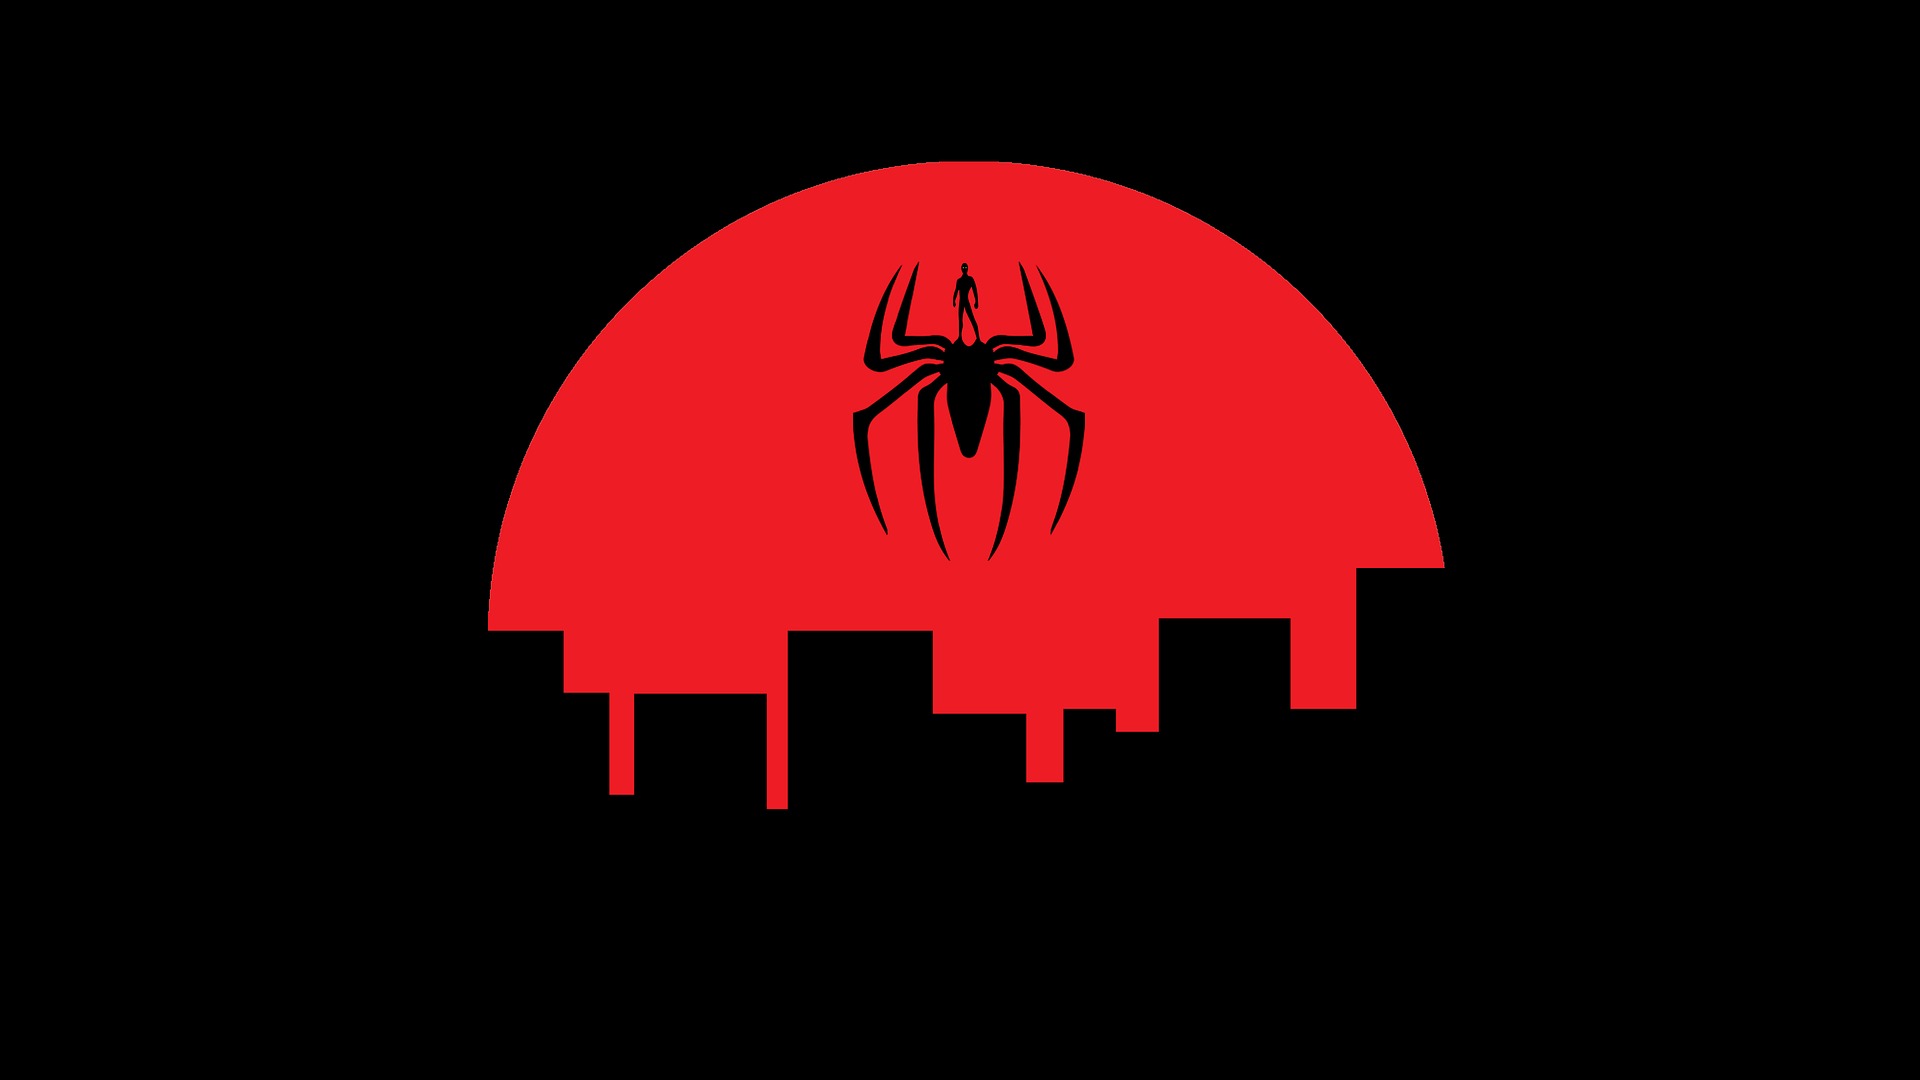 Descarga gratuita de fondo de pantalla para móvil de Minimalista, Historietas, Spider Man.